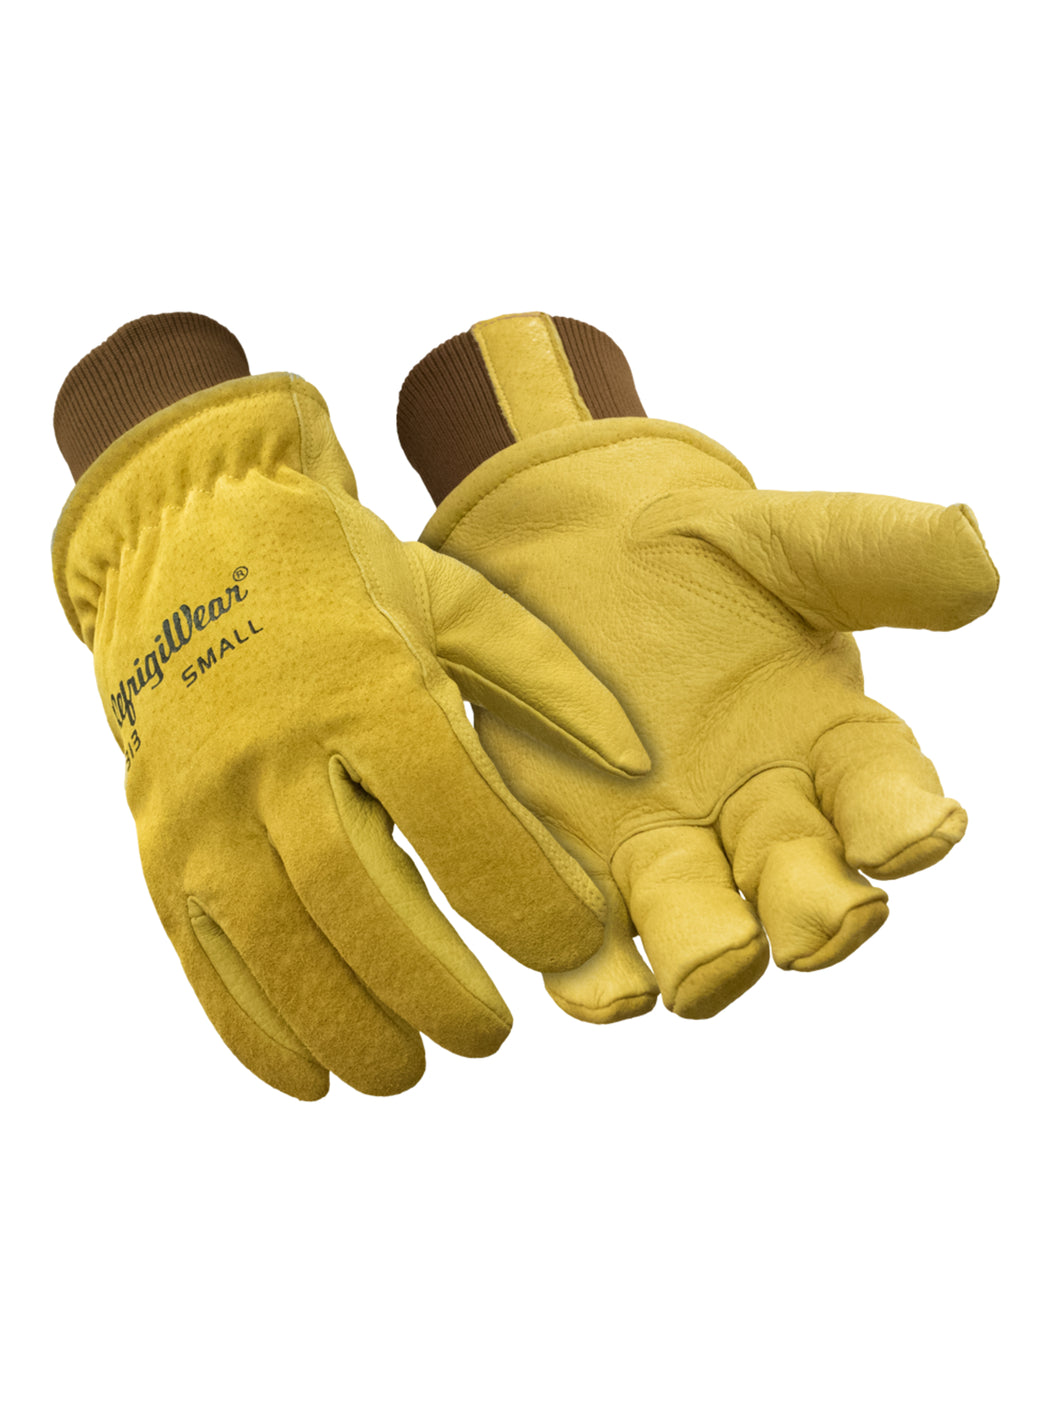 Insulated Goatskin Leather Glove